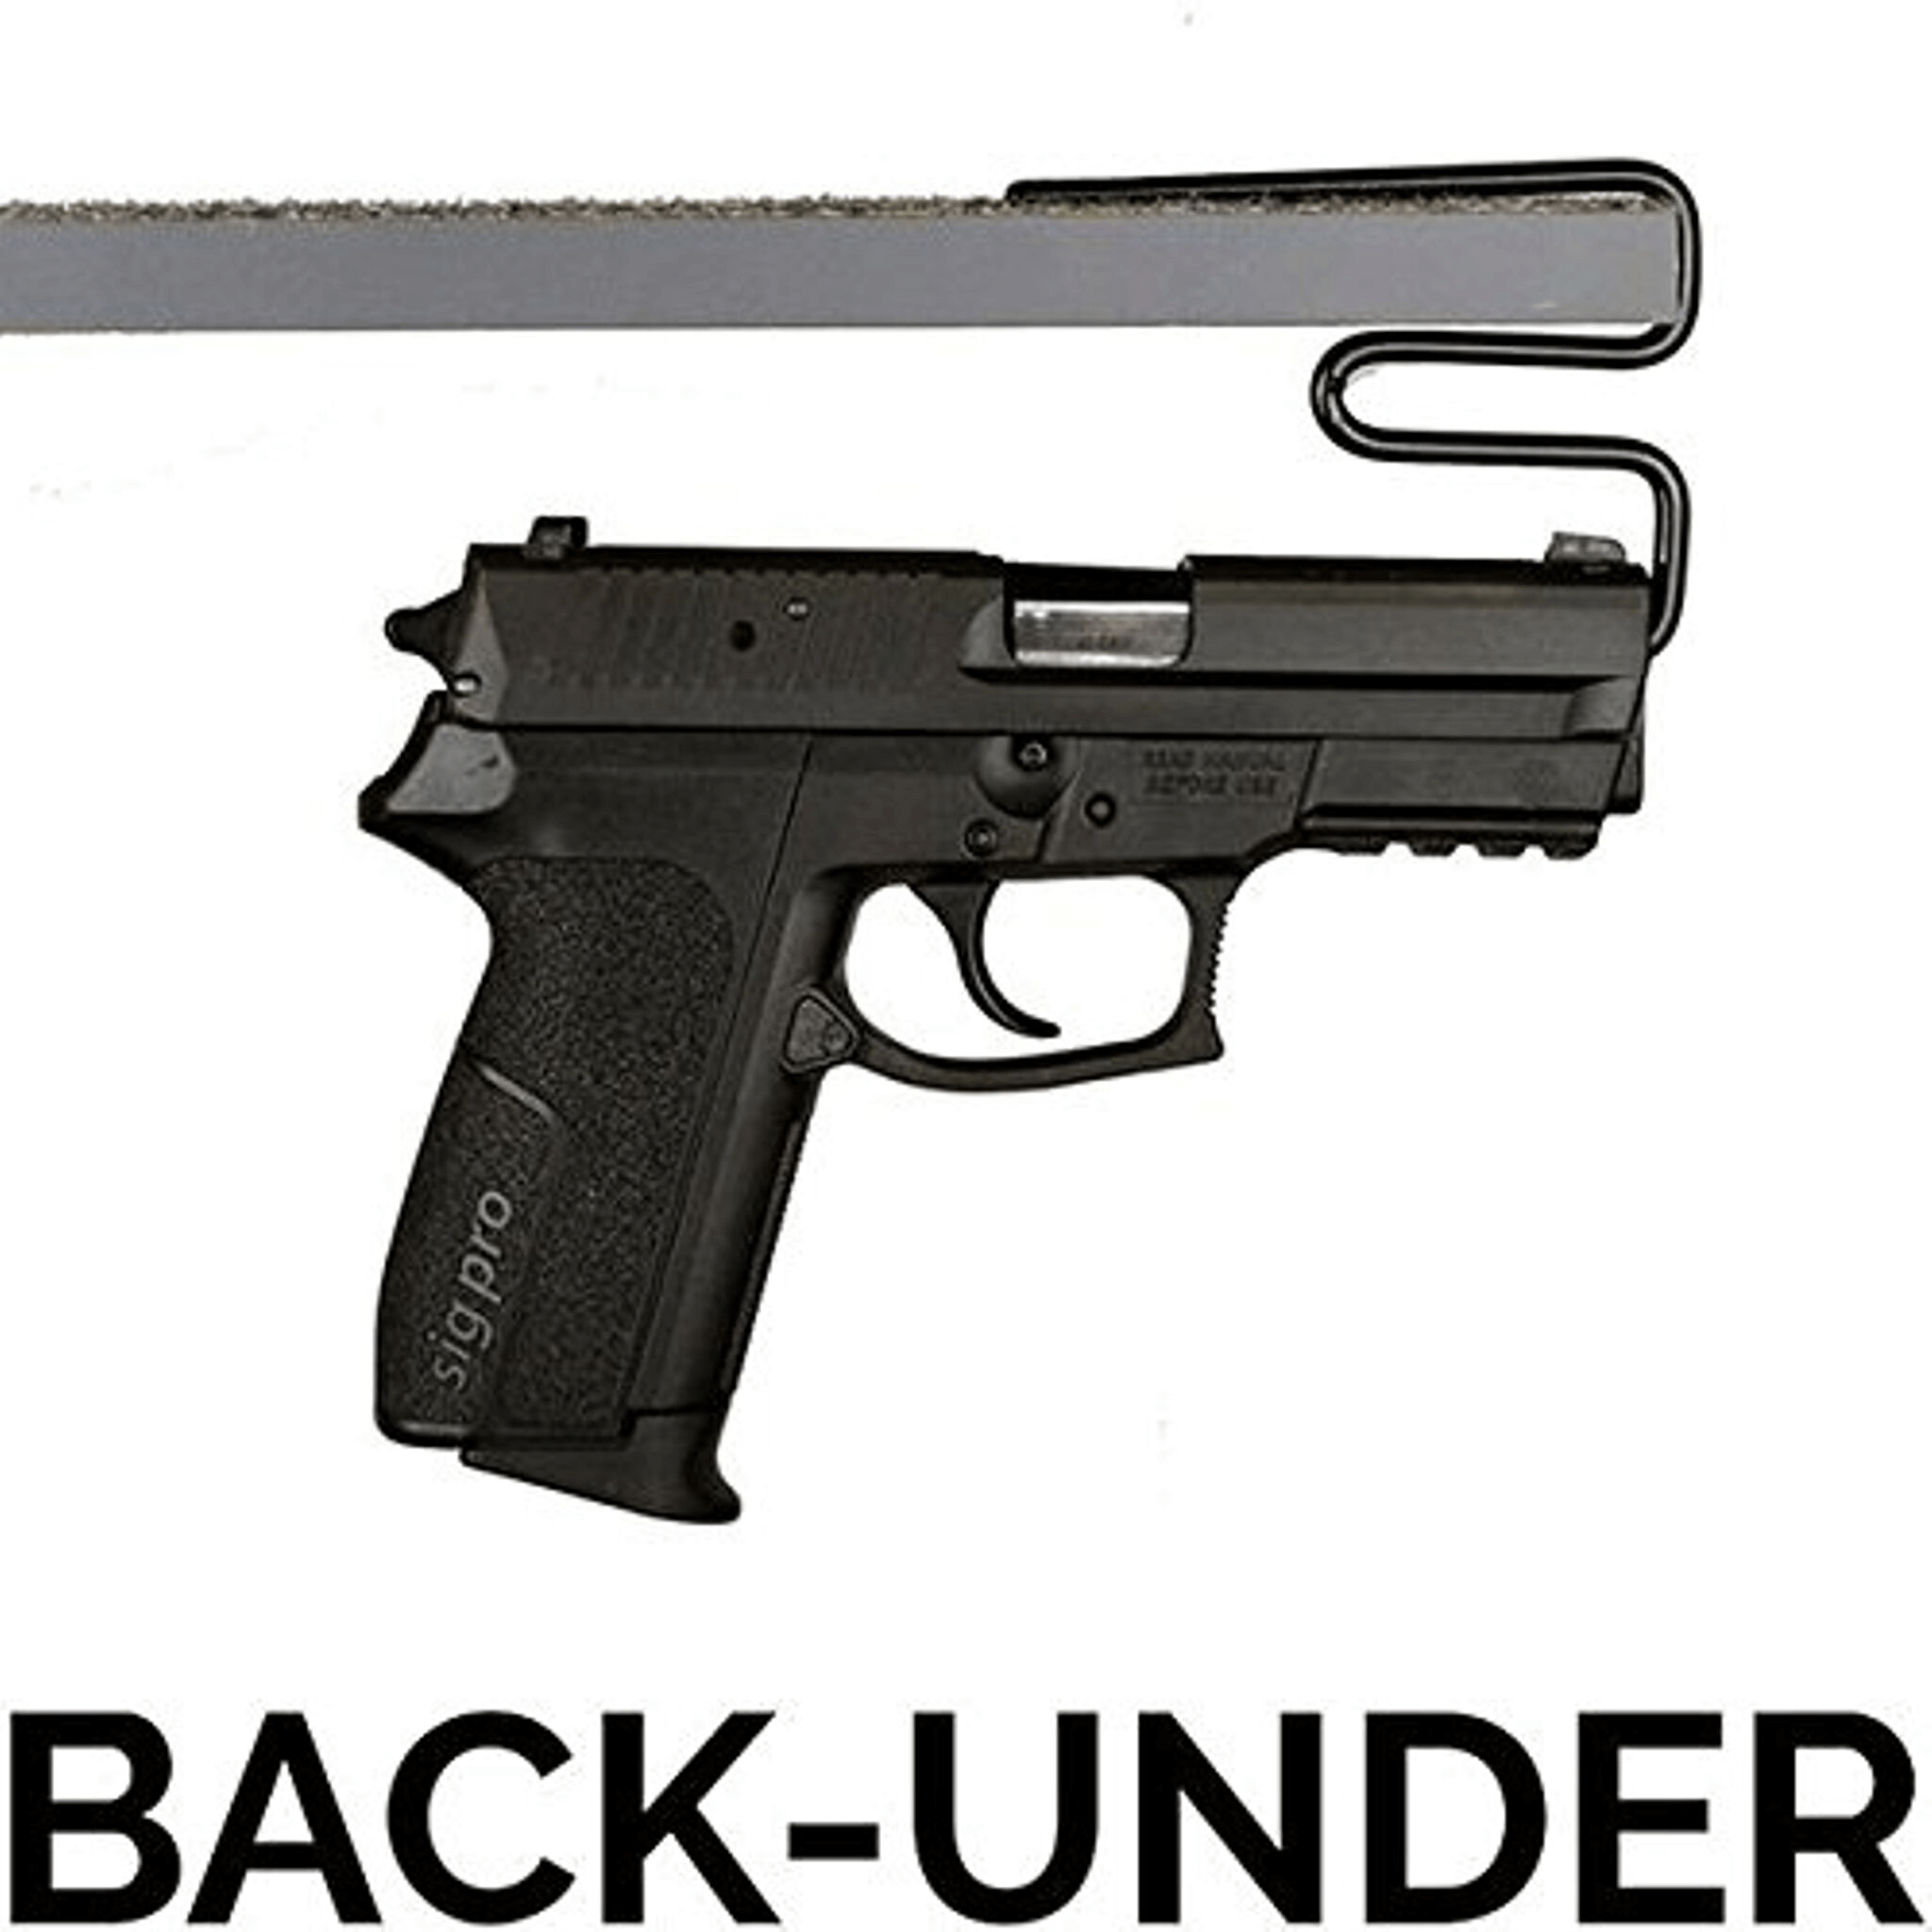 Accessory - Storage - Handgun Hanger - Back-Under - 2 pack, photo 2